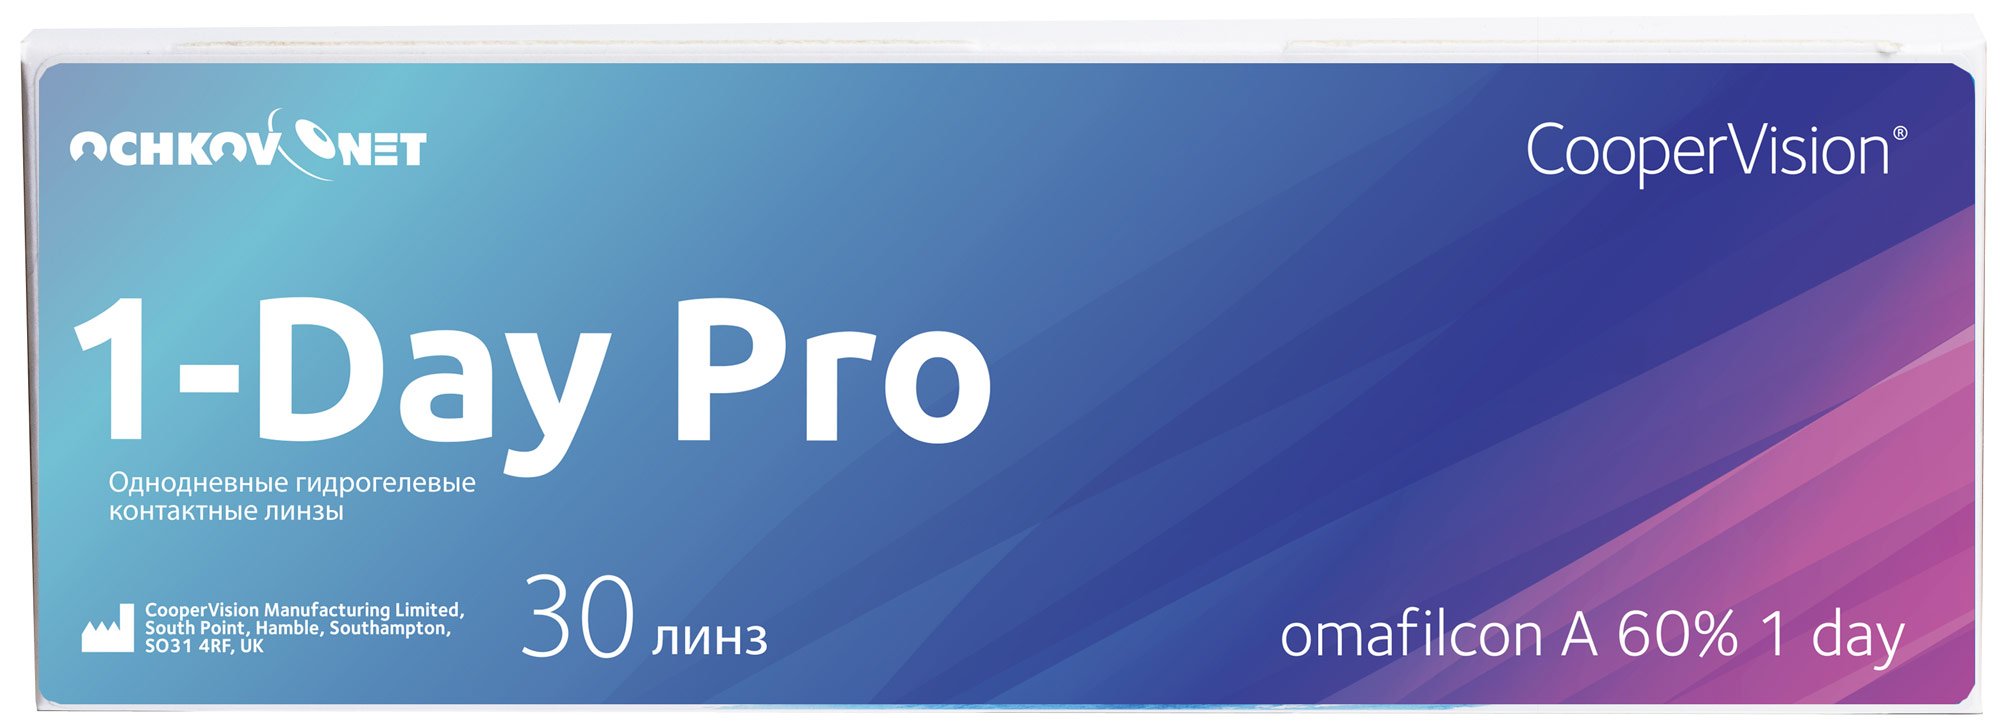 Купить Контактные линзы Ochkov.Net 1-Day Pro 30 линз 8.7, -0.75